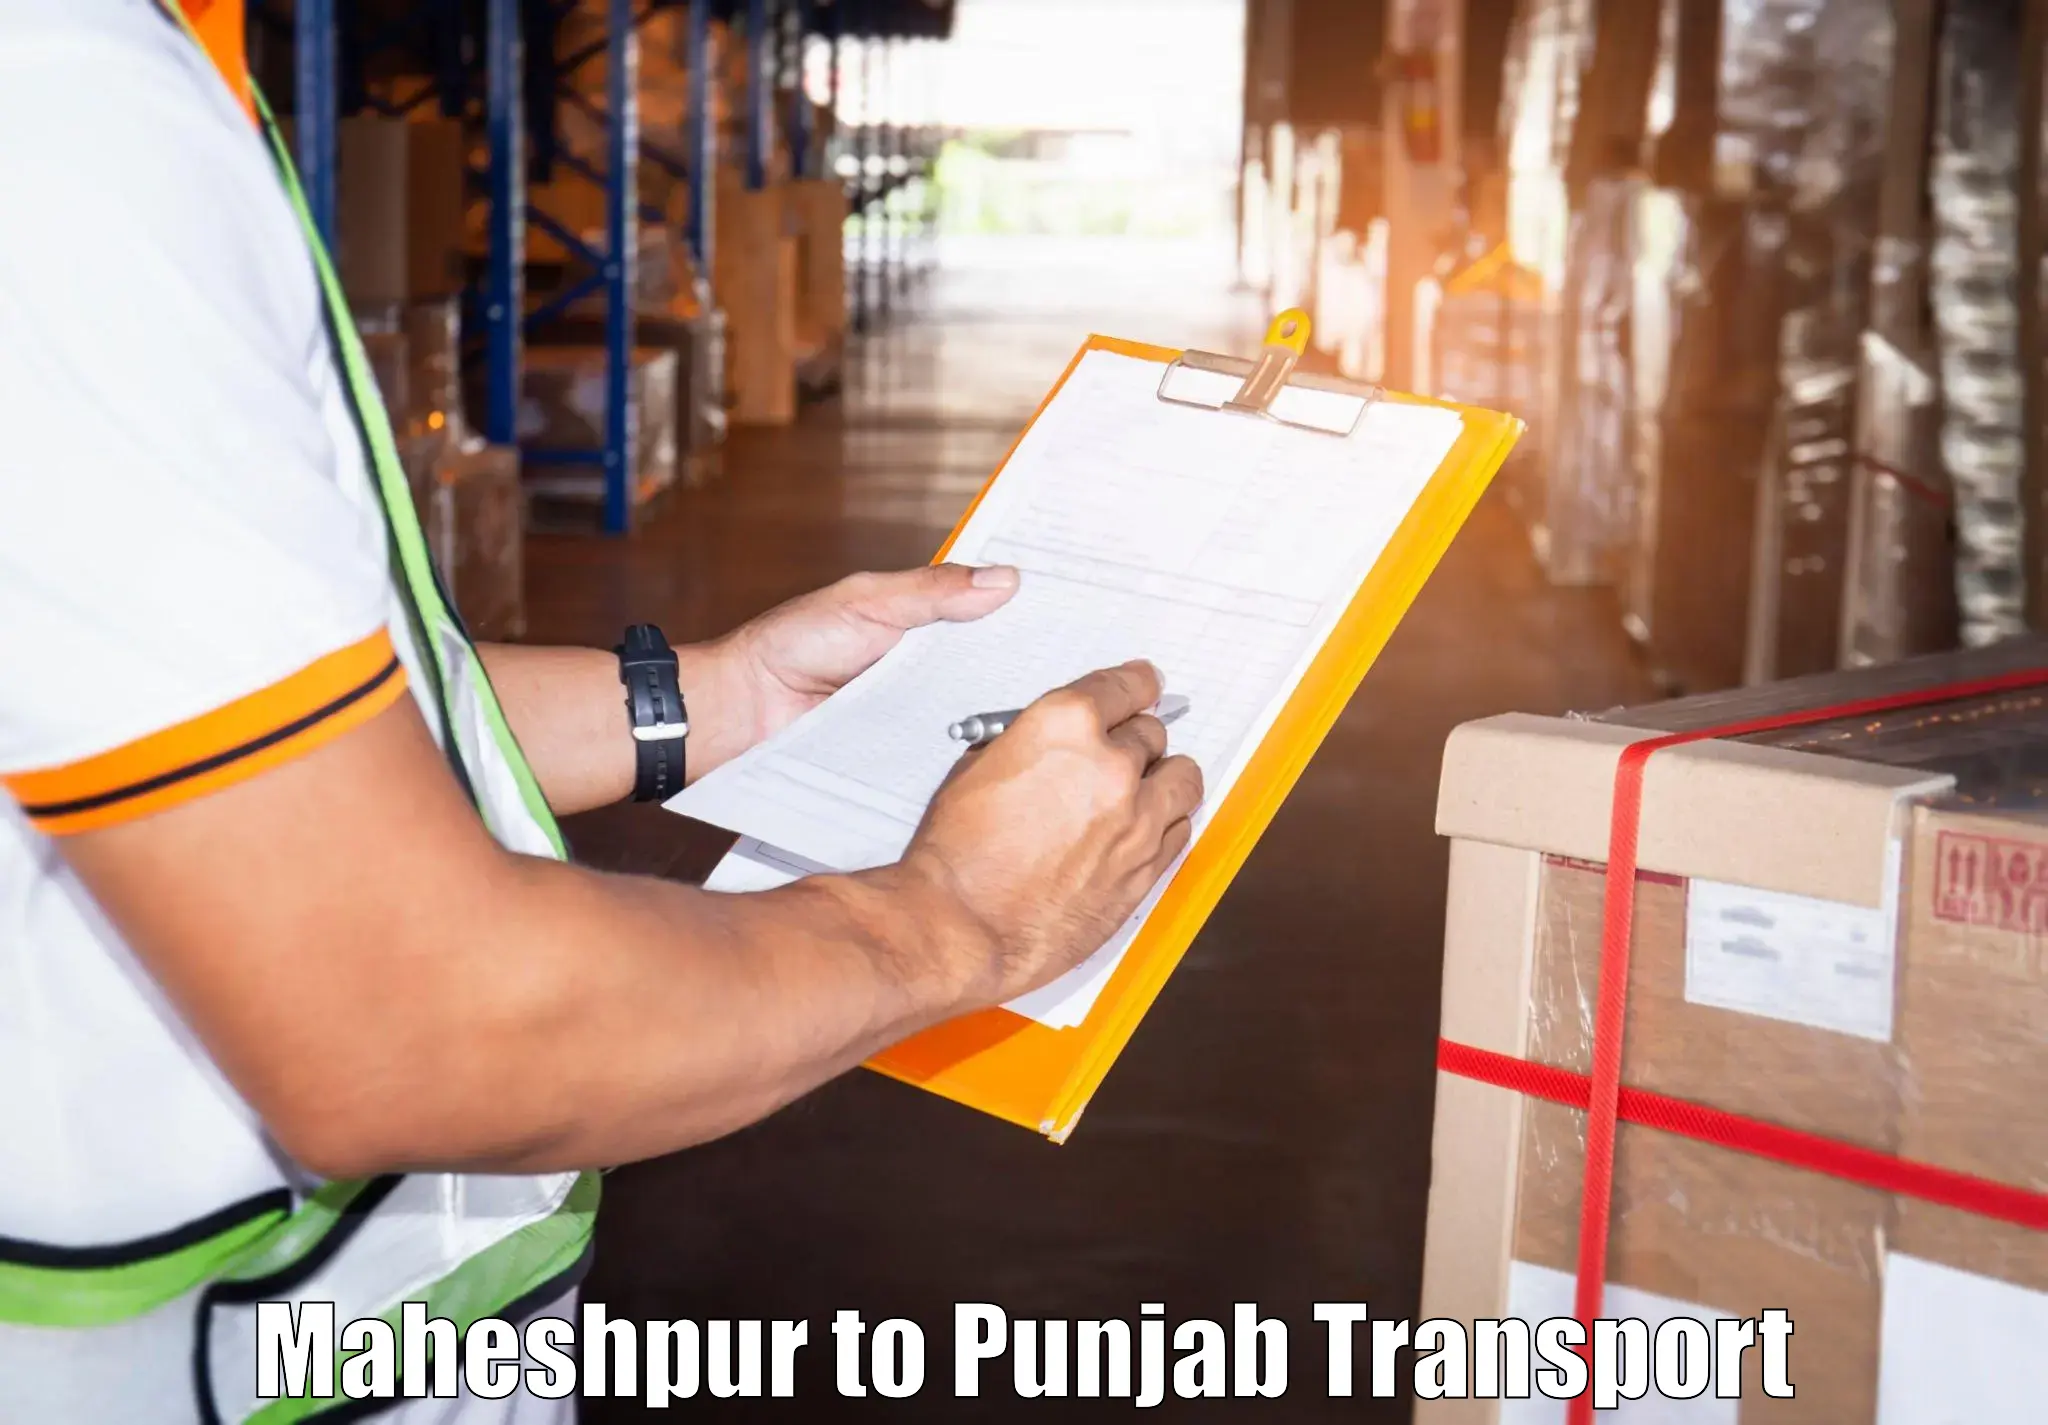 Transport in sharing Maheshpur to Patti Tarn Tara